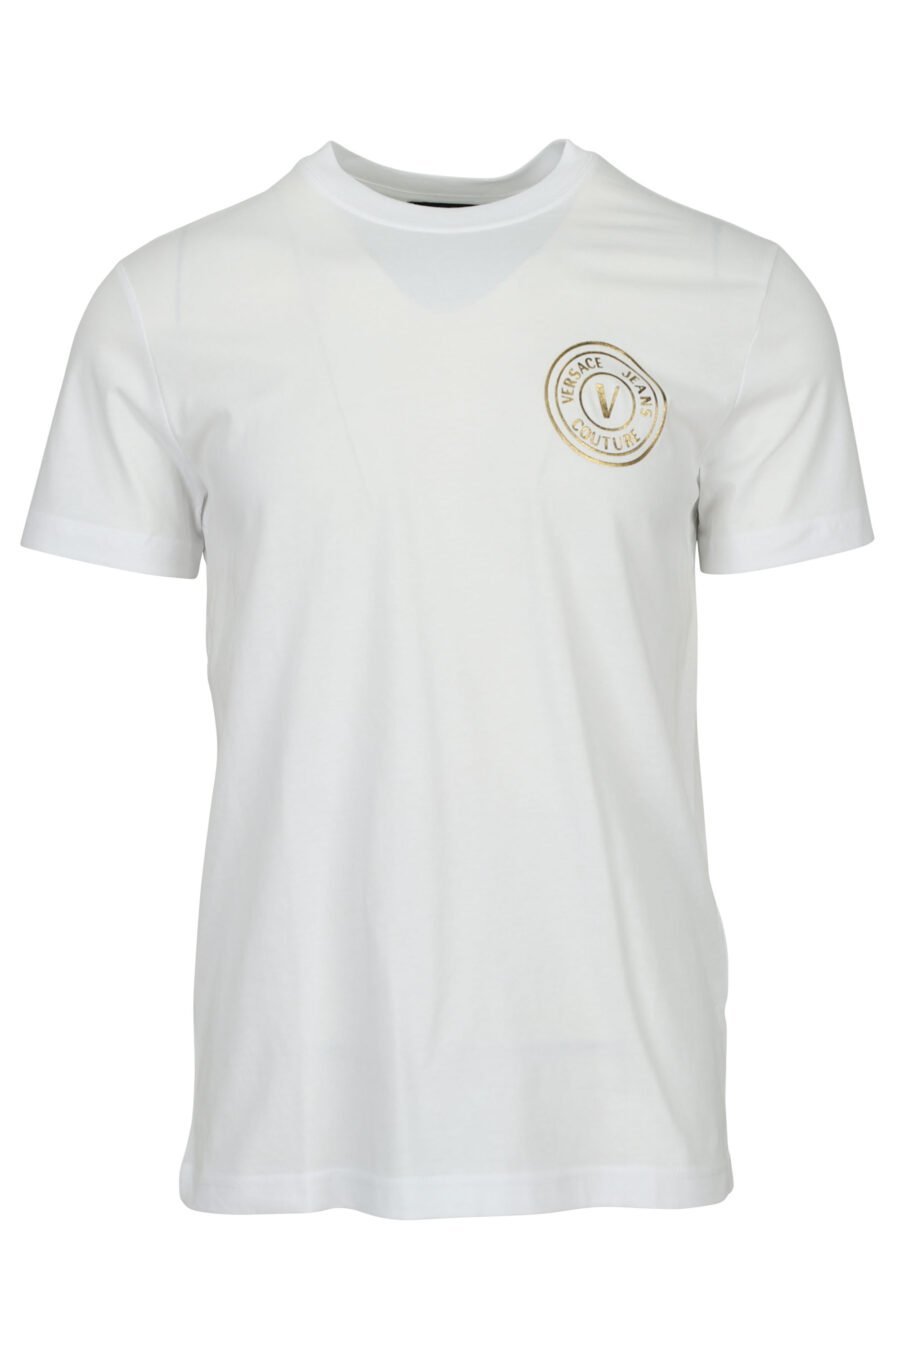 Camiseta blanca con minilogo circular brillante dorado - 8052019599688